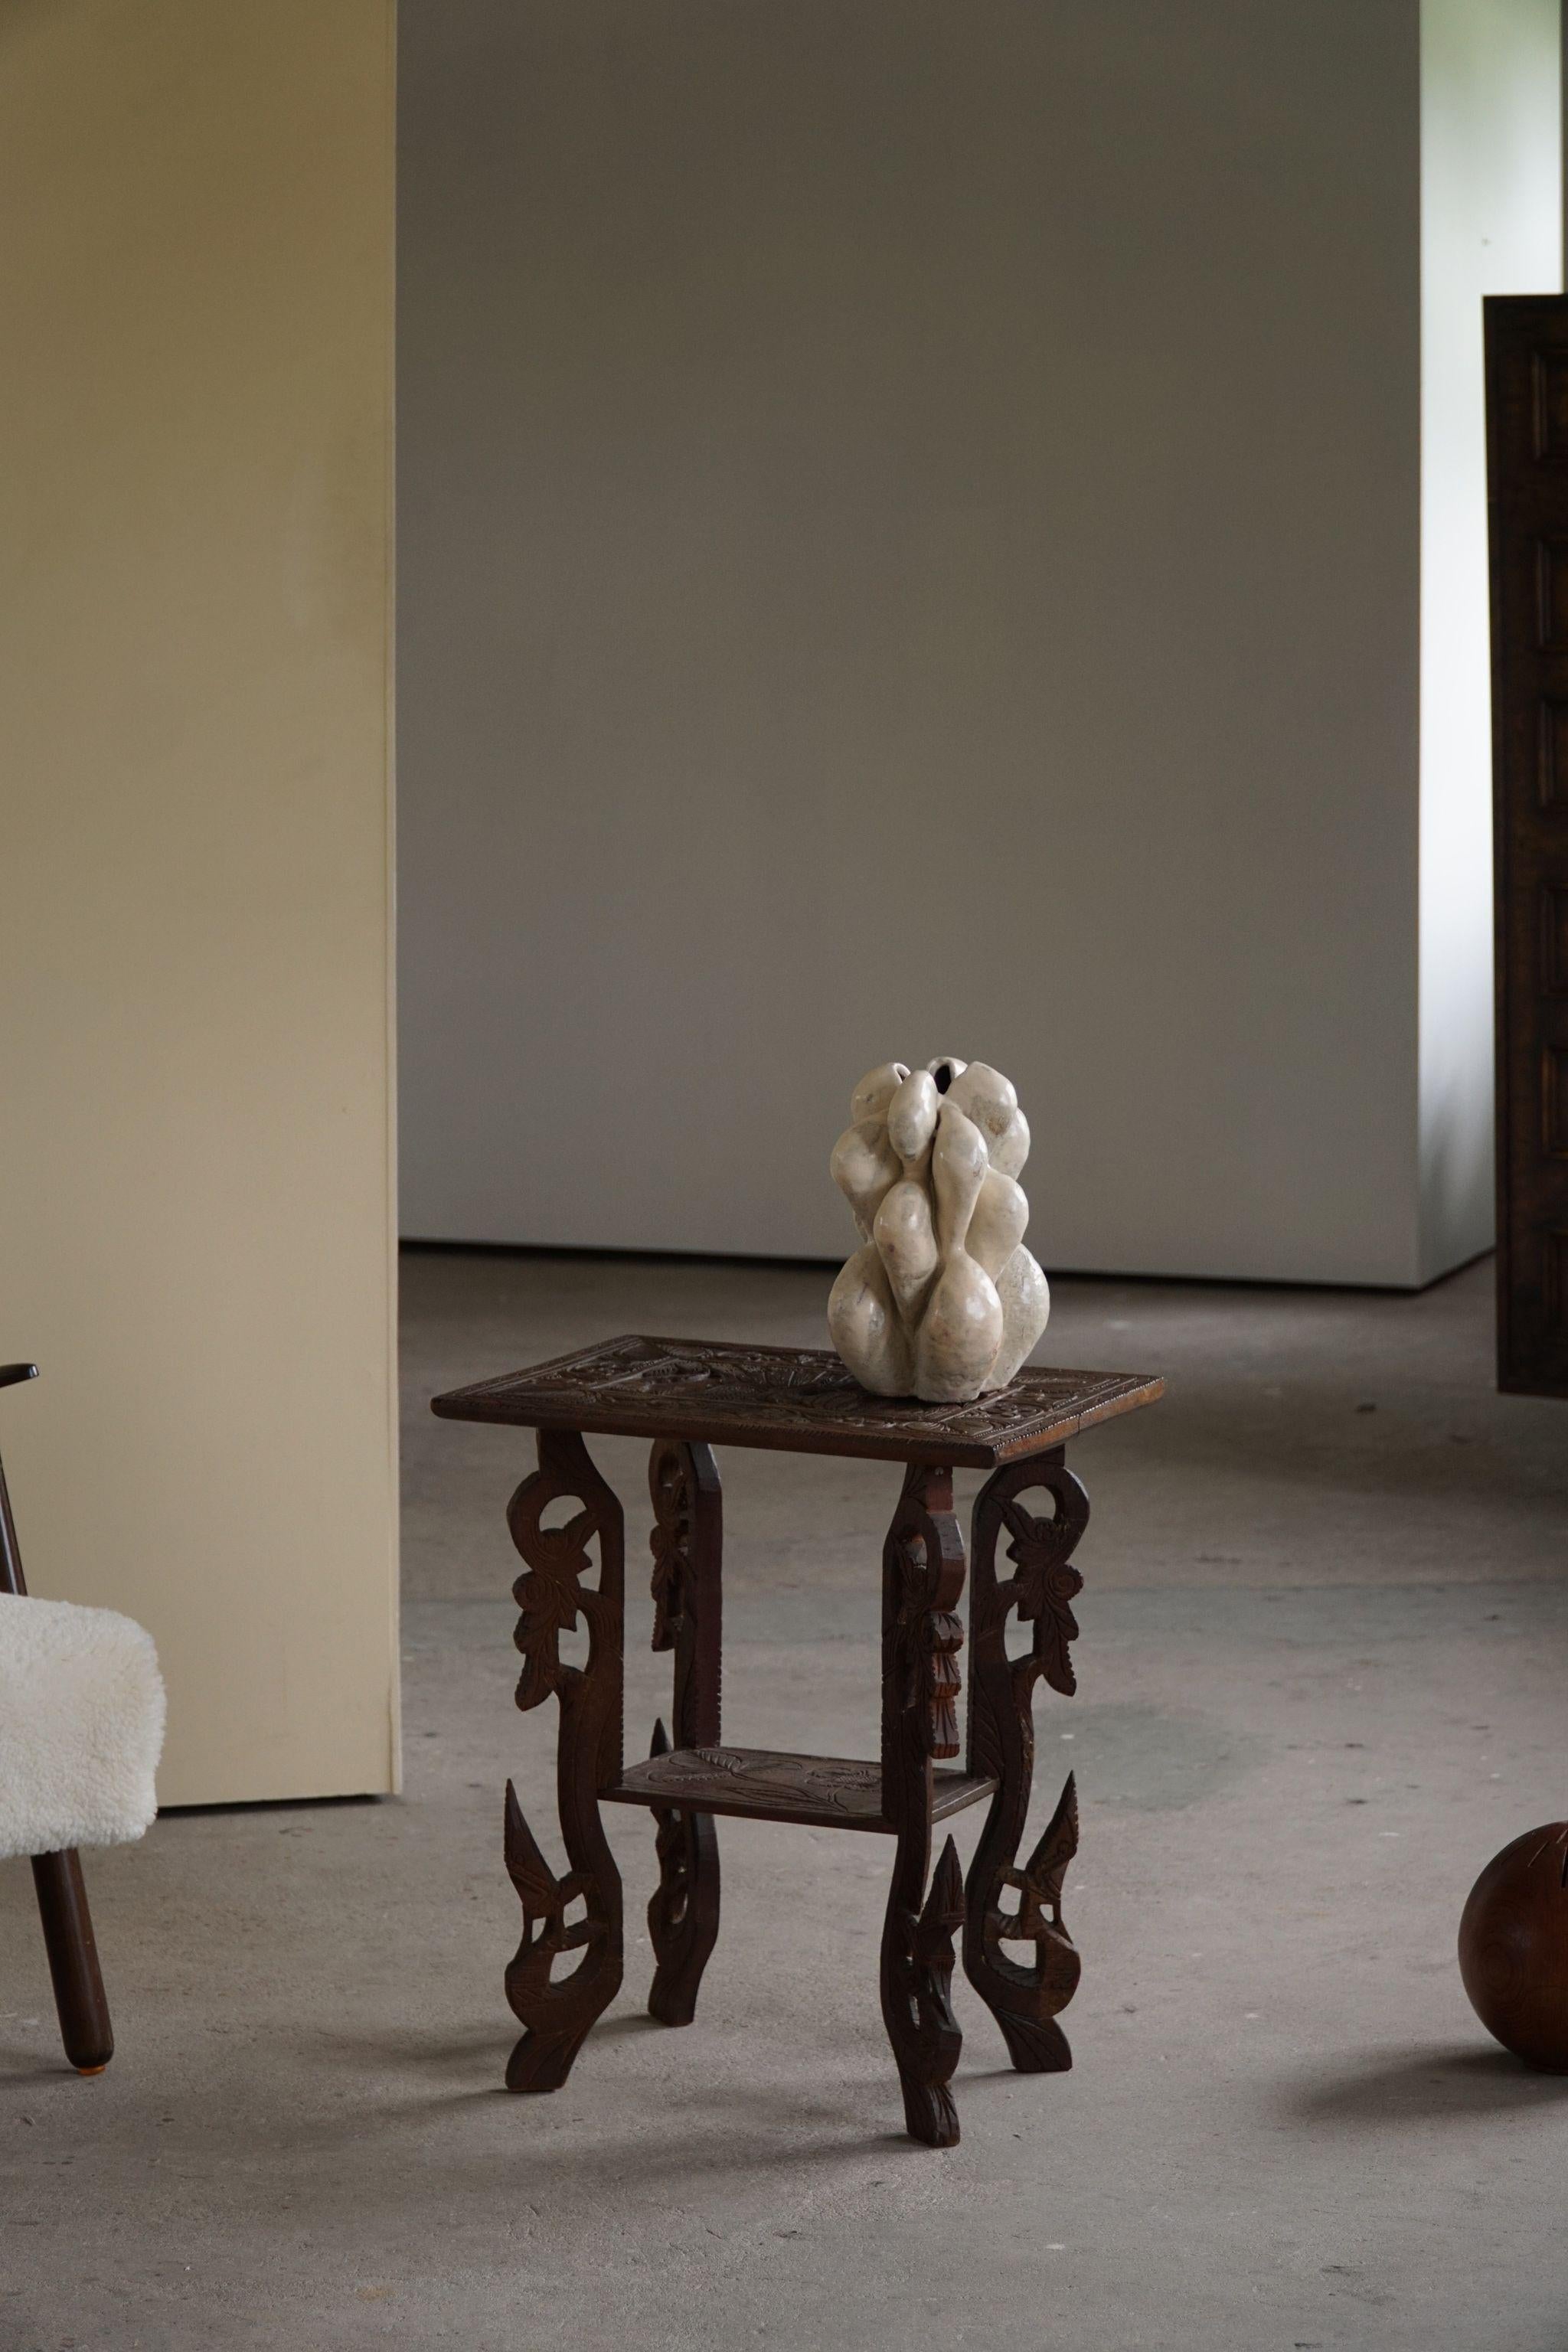 Ein dekorativer Beistelltisch aus Eiche mit 4 Beinen. Hergestellt auf dem Land von einem unbekannten Tischler, wahrscheinlich aus Indien. Hergestellt im frühen 20. Jahrhundert. Ein niedlicher Vintage-Wabi-Sabi-Artikel, der sich gut für die moderne